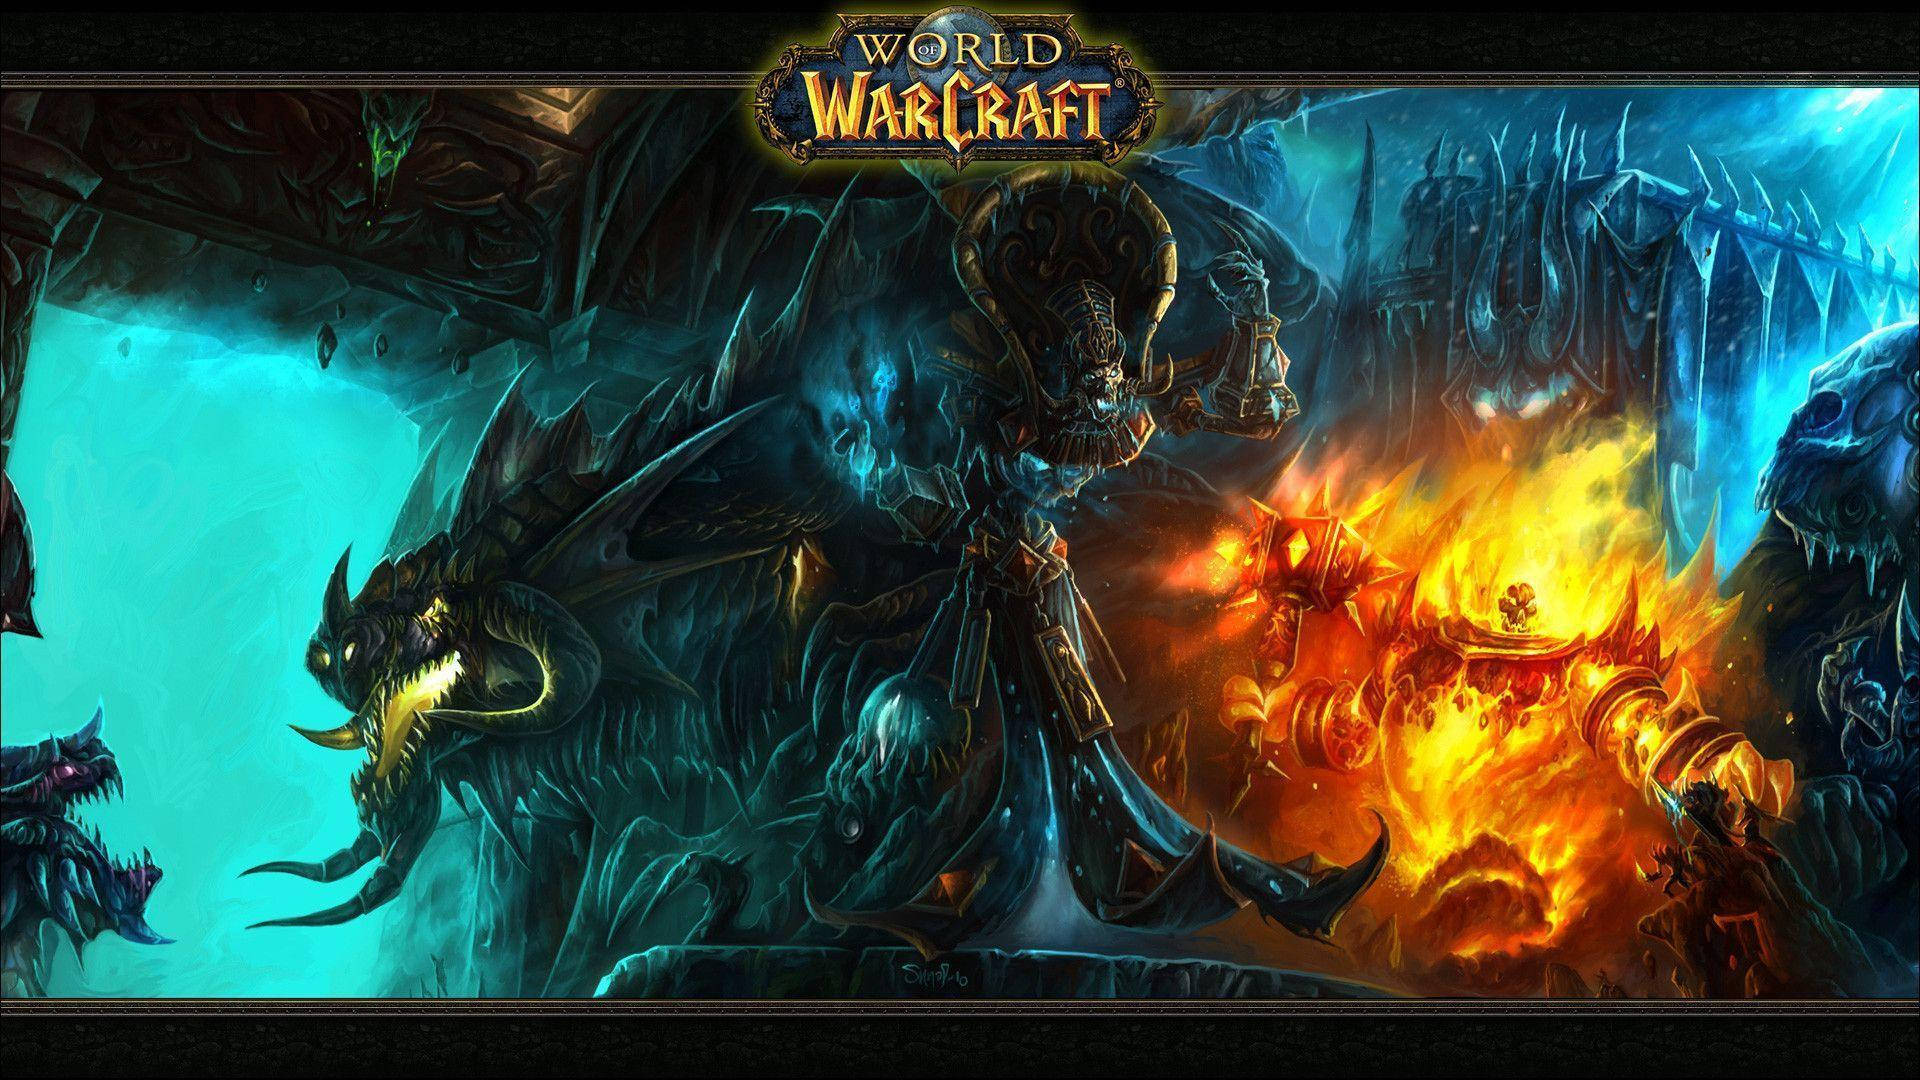 World Of Warcraft Kel'thuzad And Deathwing Background